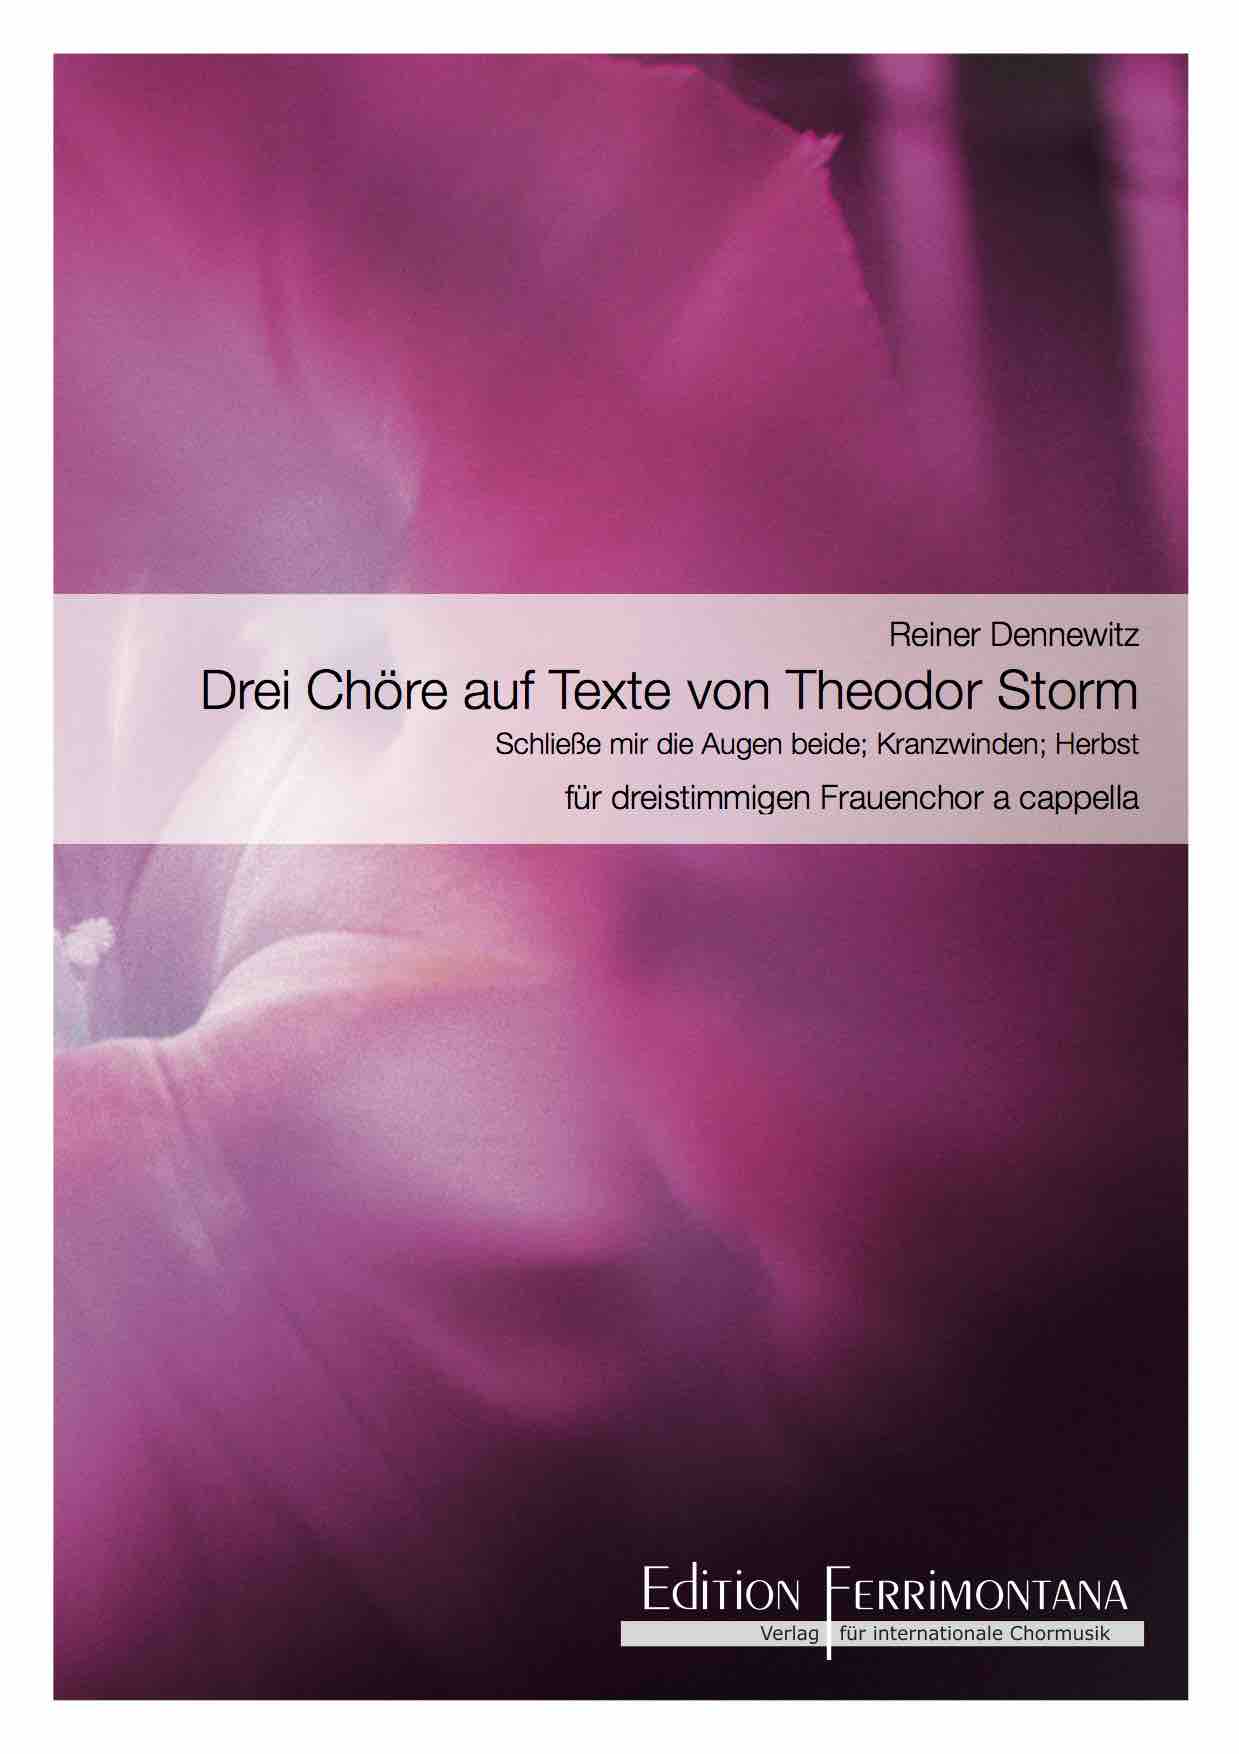 Dennewitz: Drei Chöre auf Texte von Theodor Storm: Schließe mir die Augen beide; Kranzwinden; Herbst